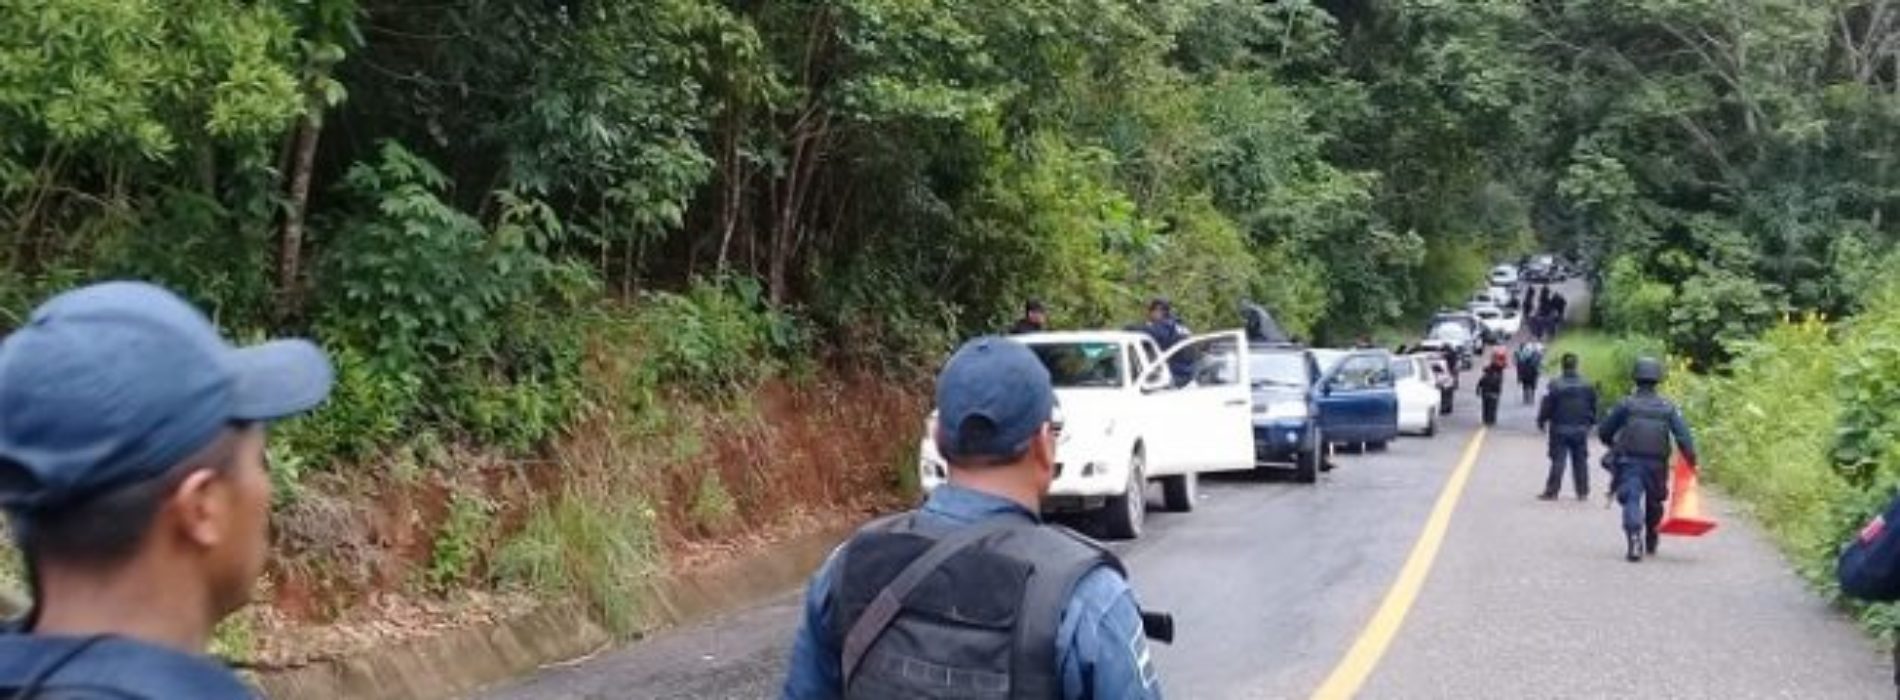 Por miedo a la violencia, paran operativo en
Zimatlán